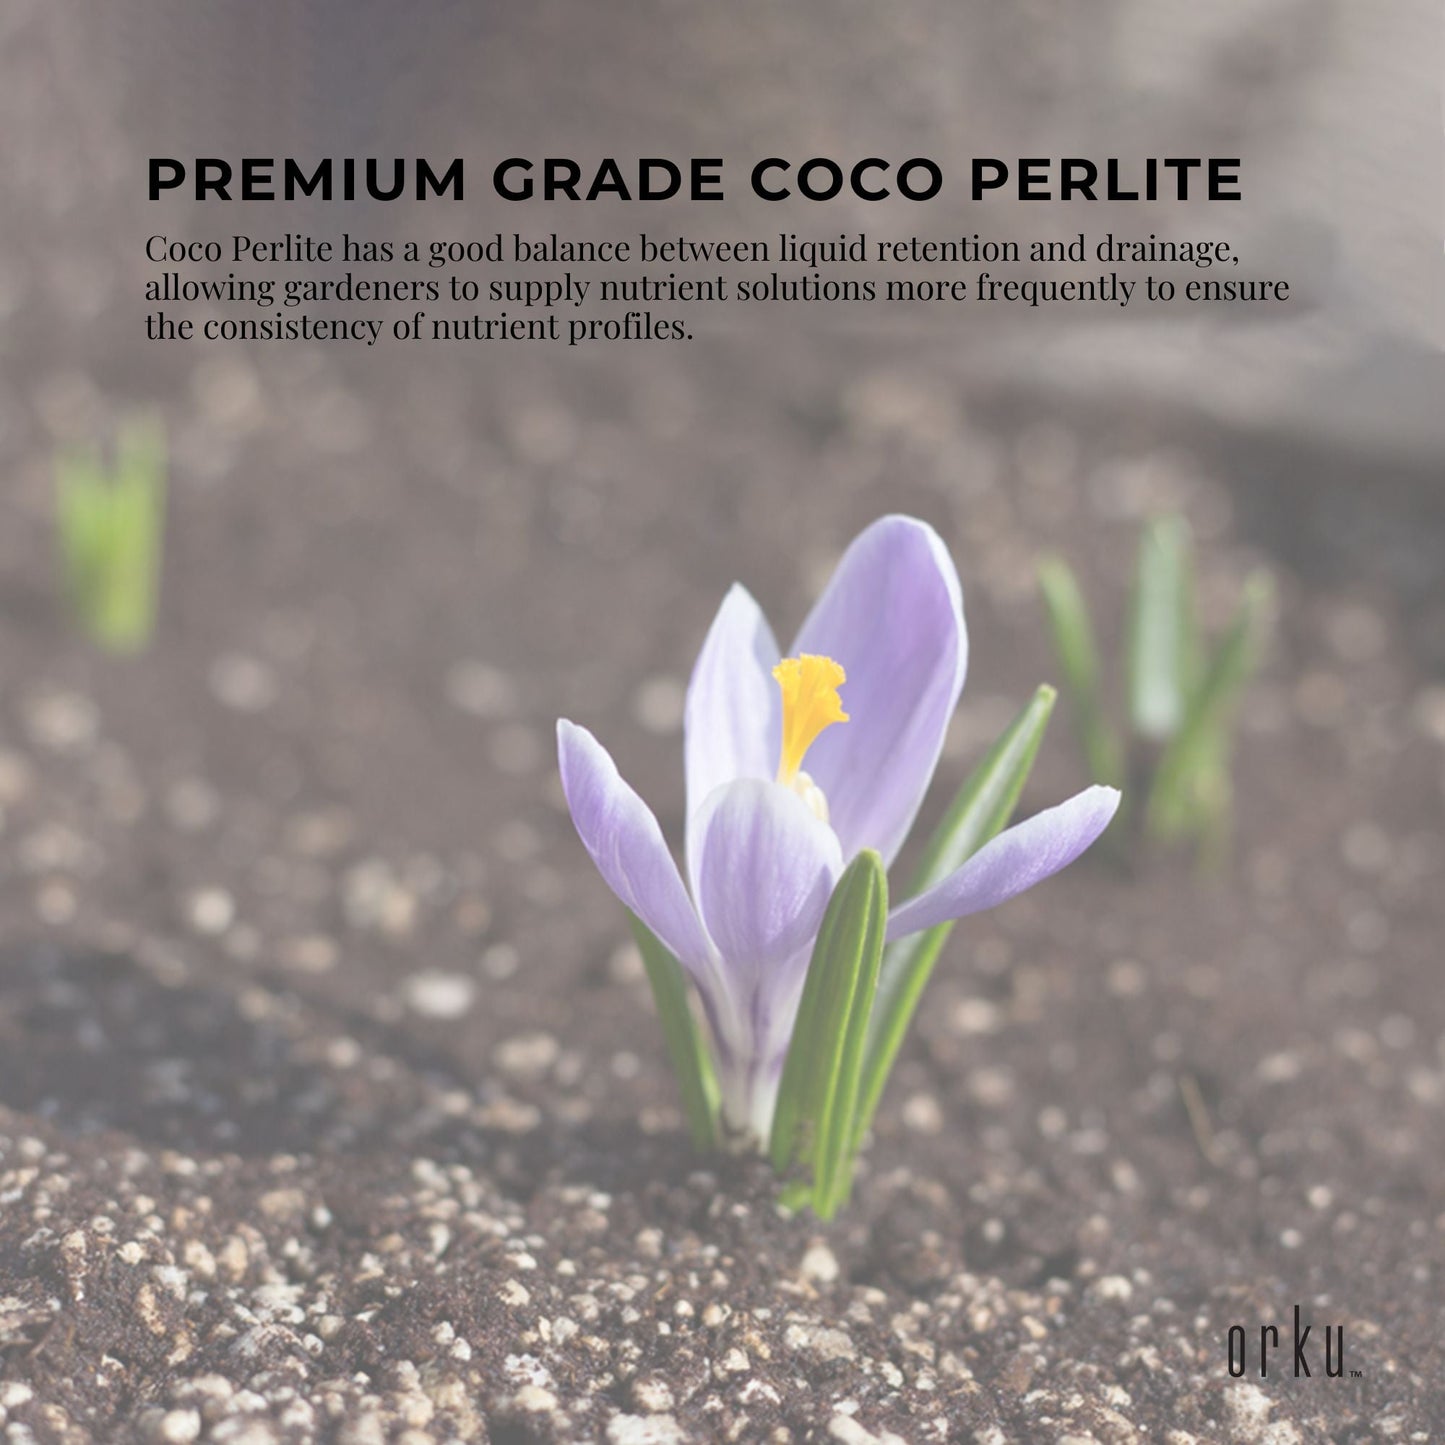 10L Premium Coco Perlite Mix - 70% Coir Husk 30% Hydroponic Plant Growing Medium